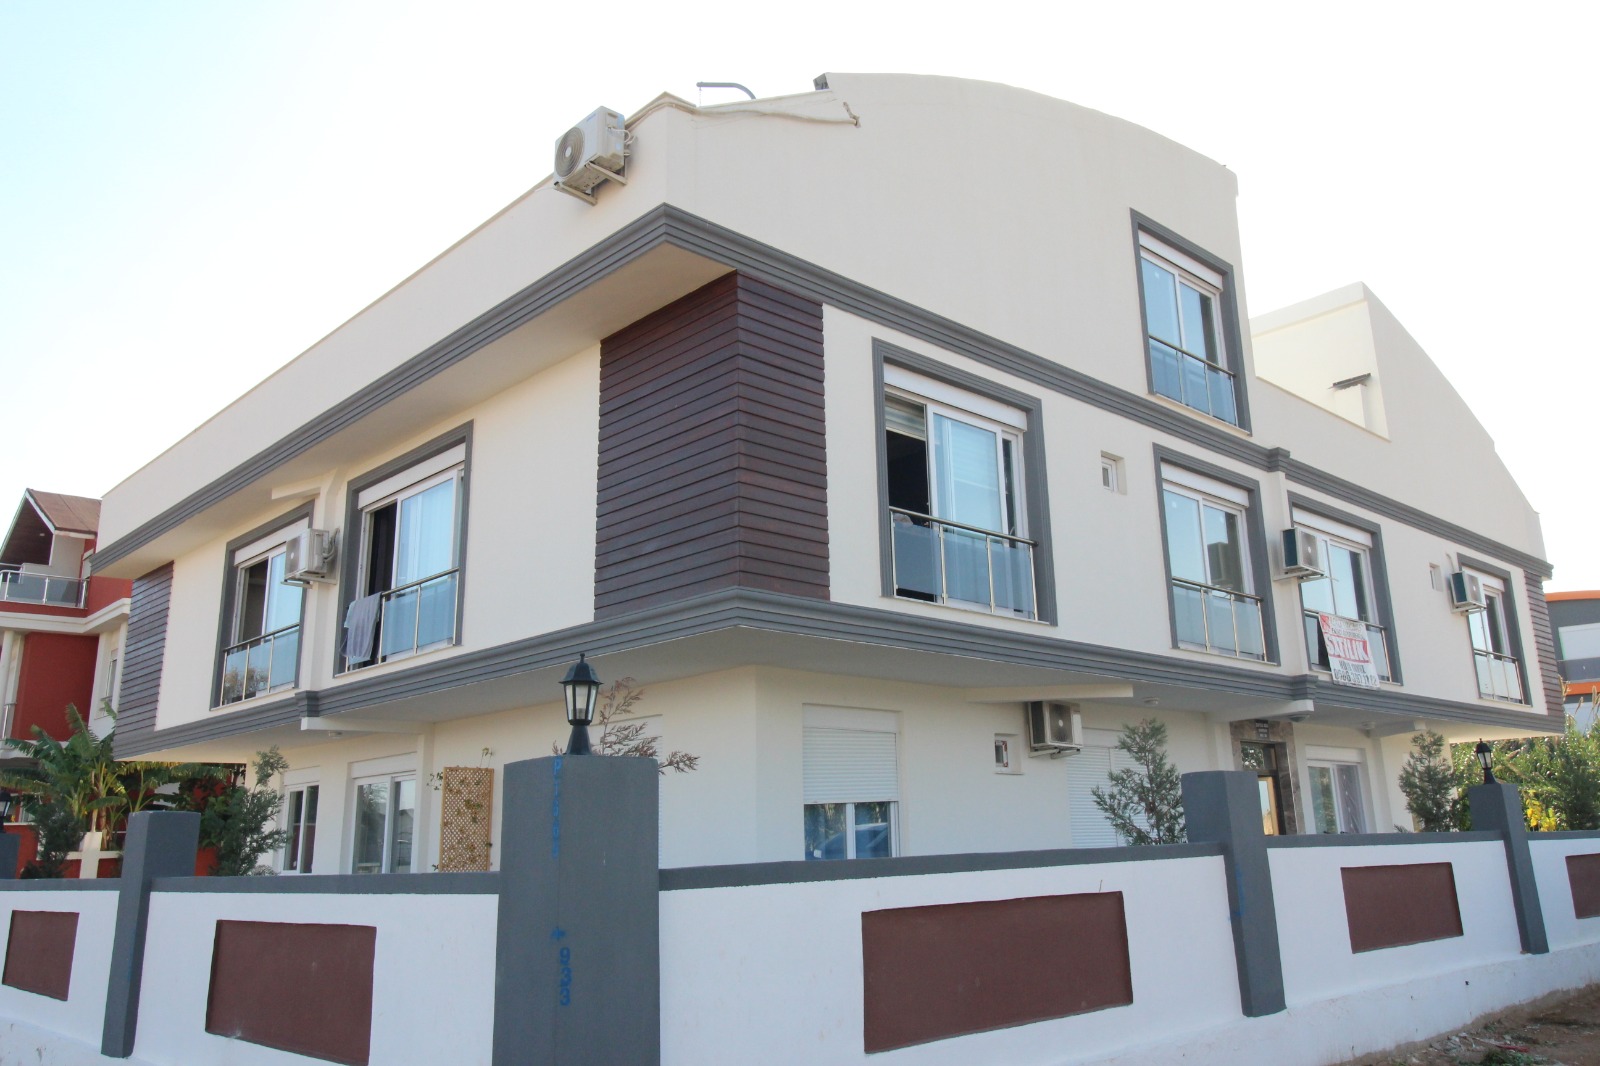 Duplex Apartment For Sale in Antalya Turkey